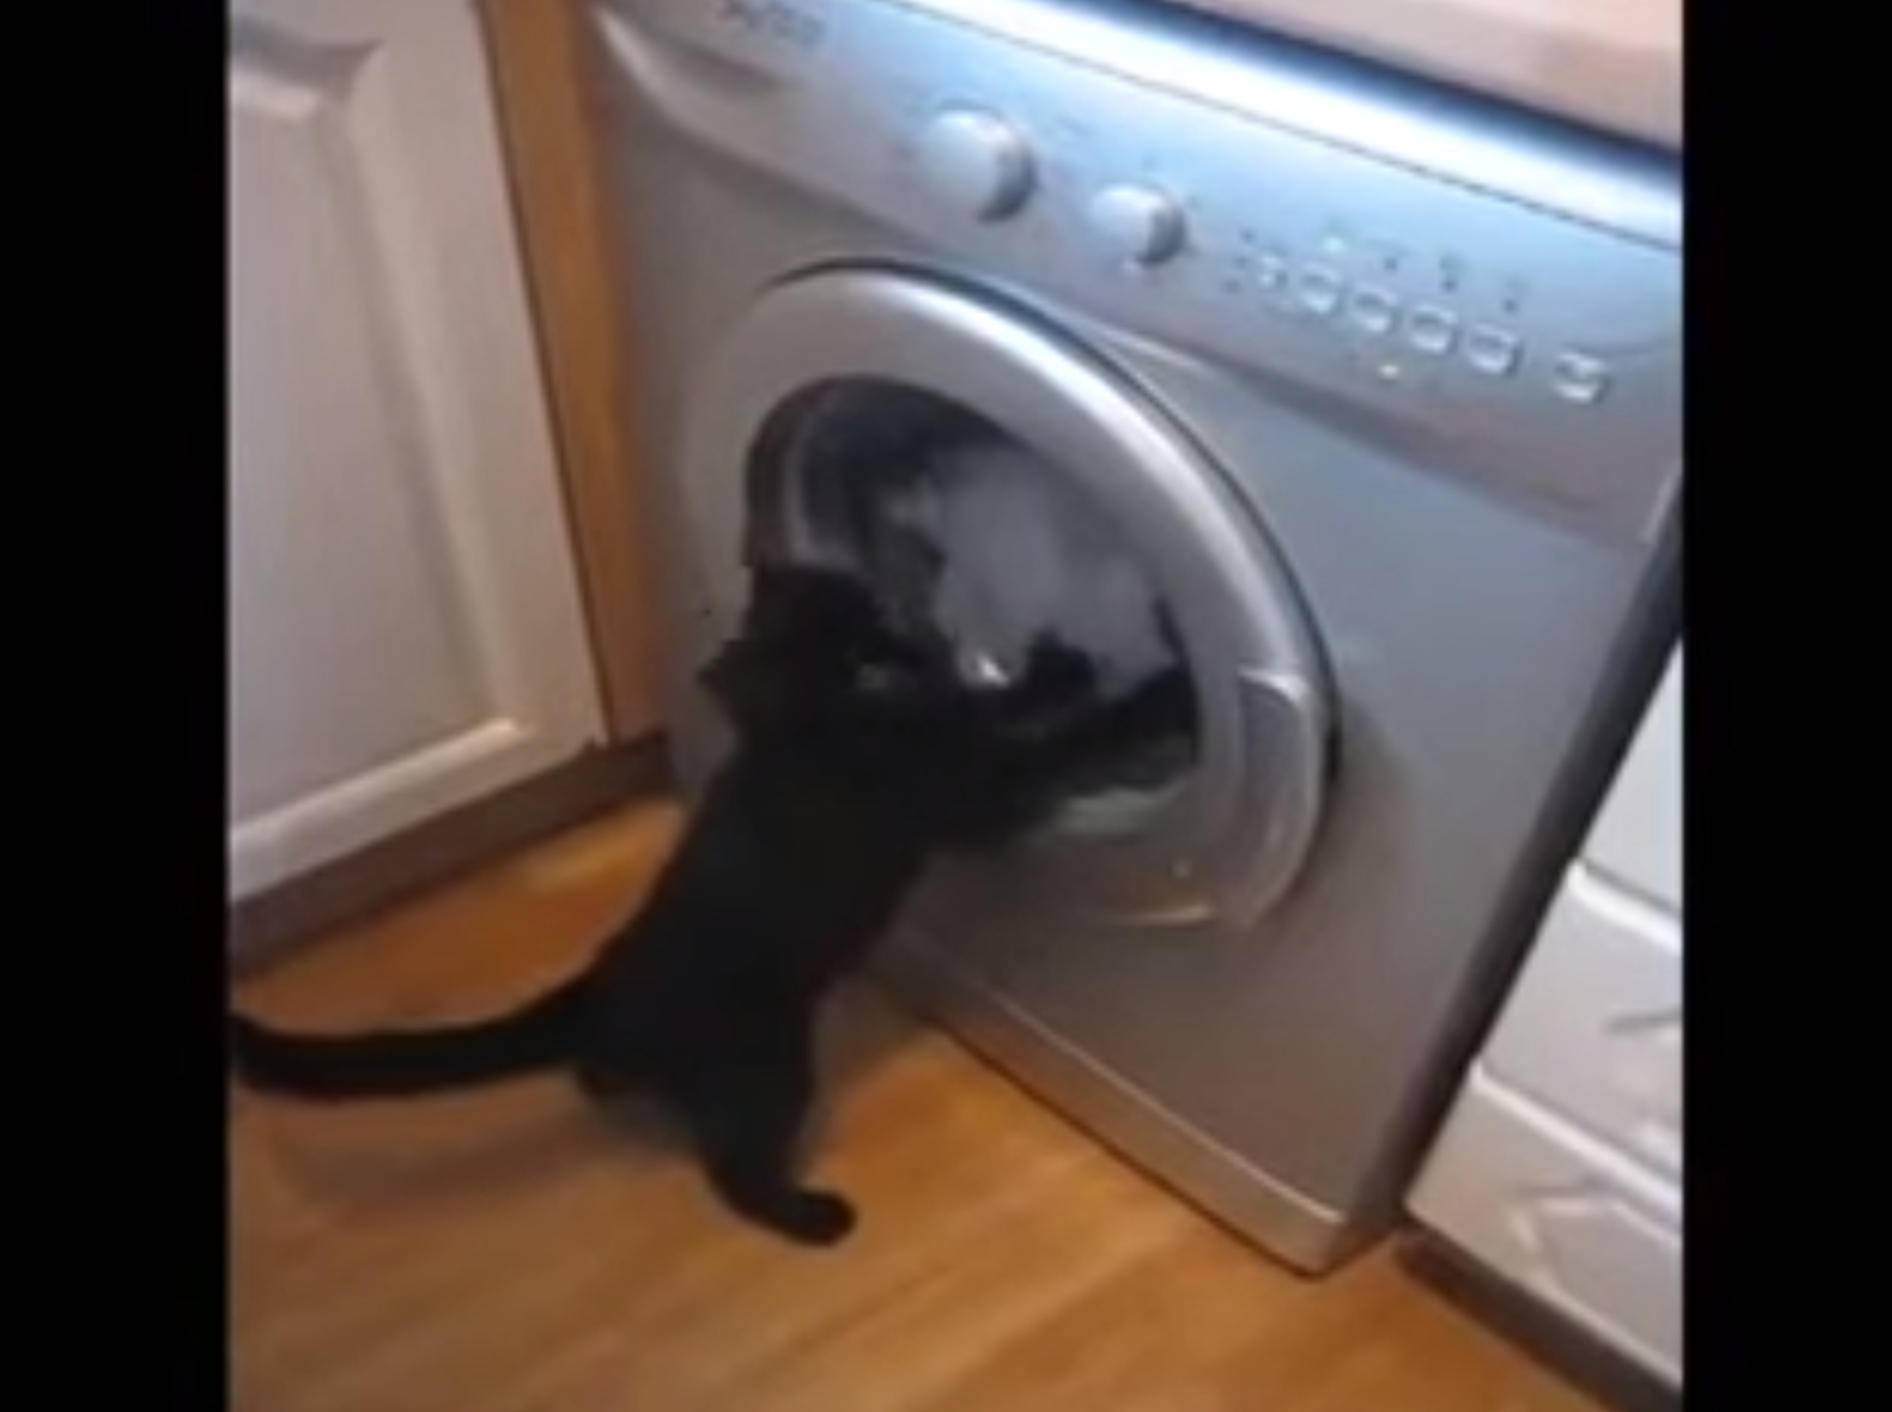 Drehwurm garantiert: Katze kämpft gegen Waschmaschine – Bild: YouTube / Cute Box